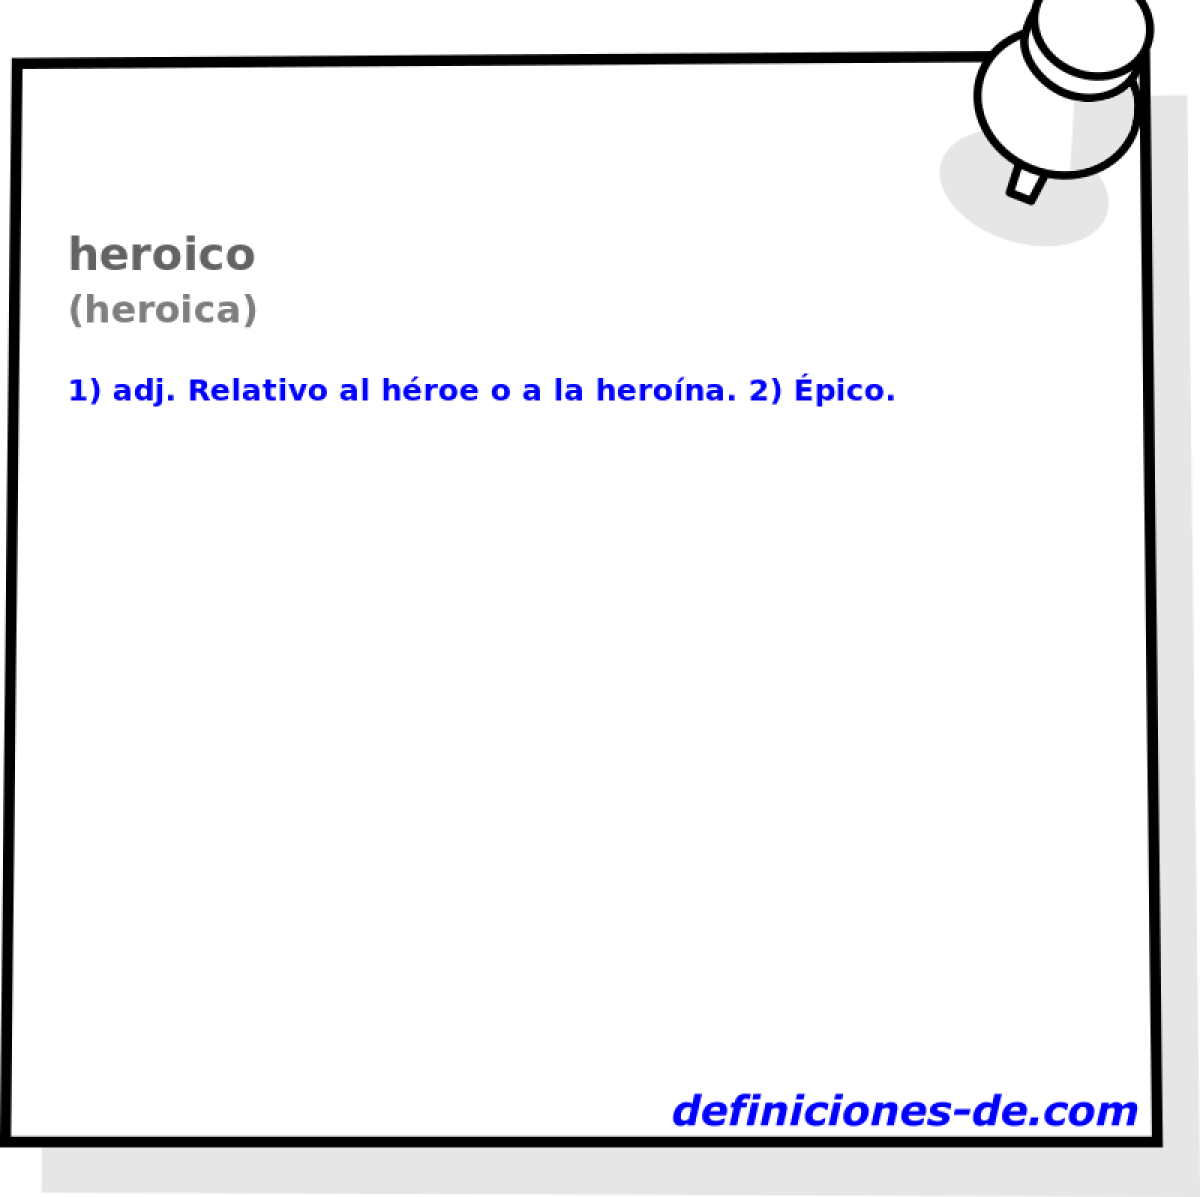 heroico (heroica)